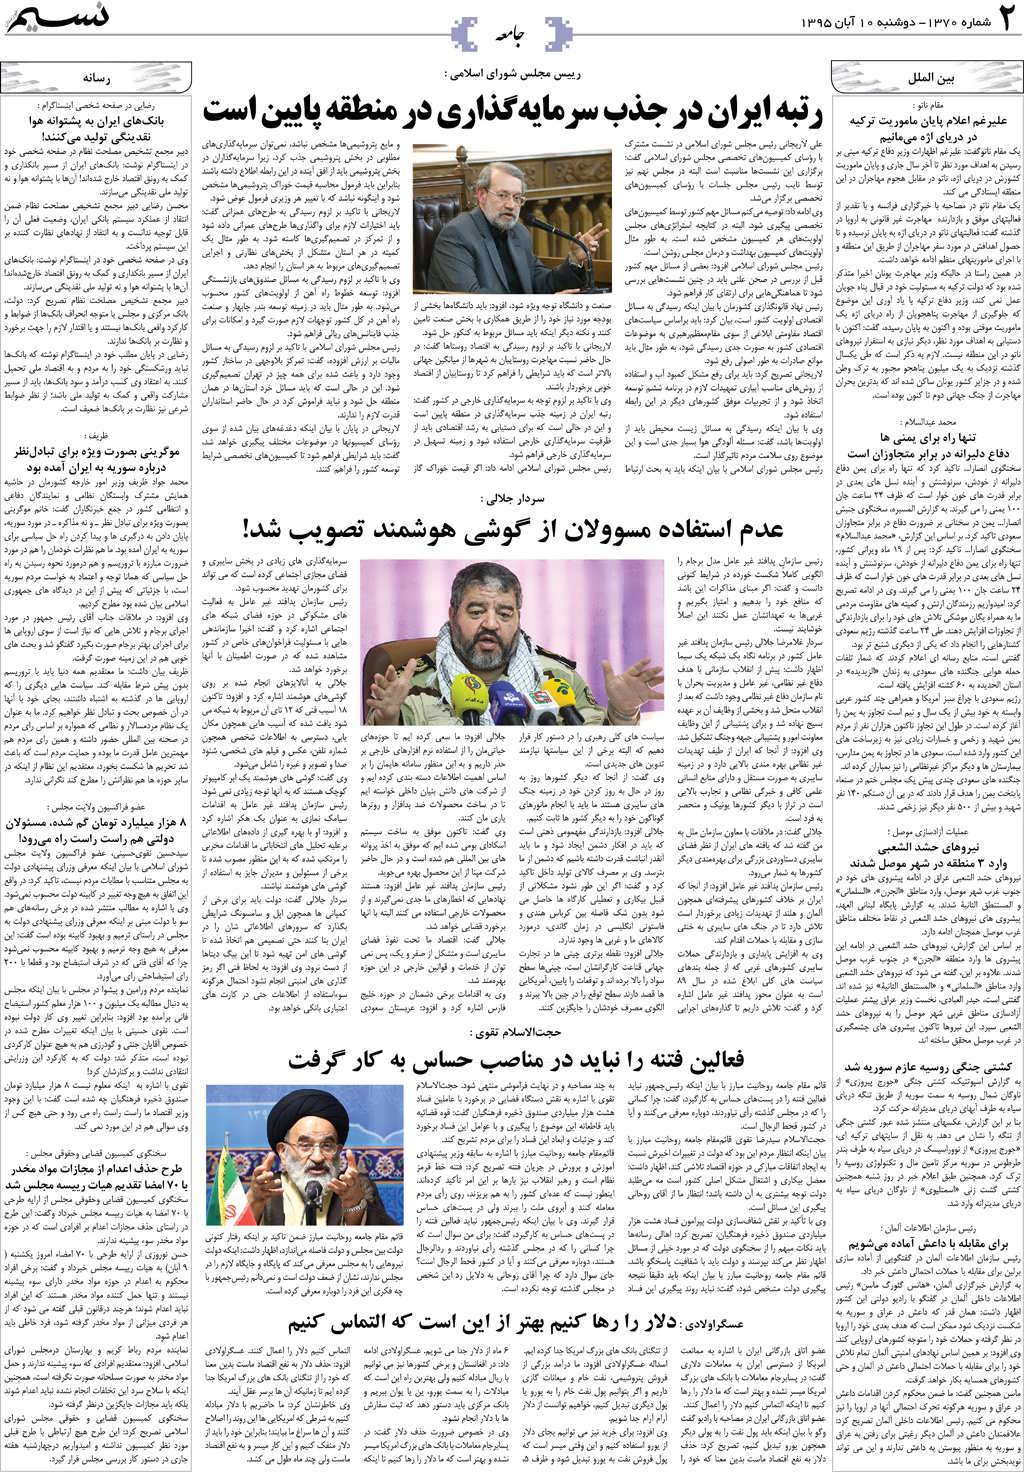 صفحه جامعه روزنامه نسیم شماره 1370